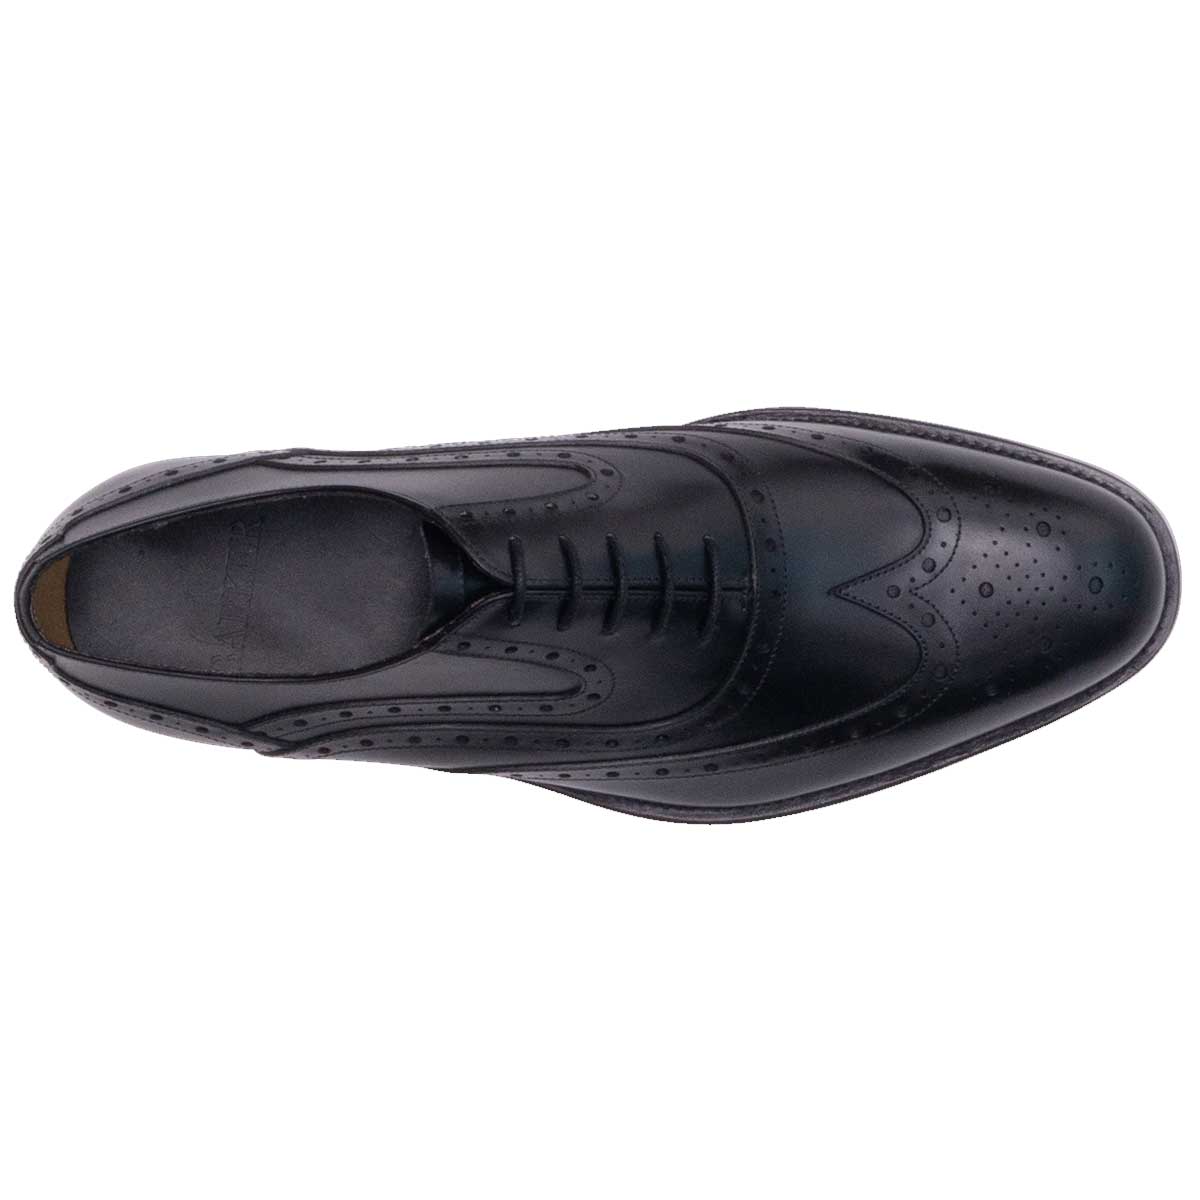 BARKER Liffey Shoes - Mens Brogue - Black Calf